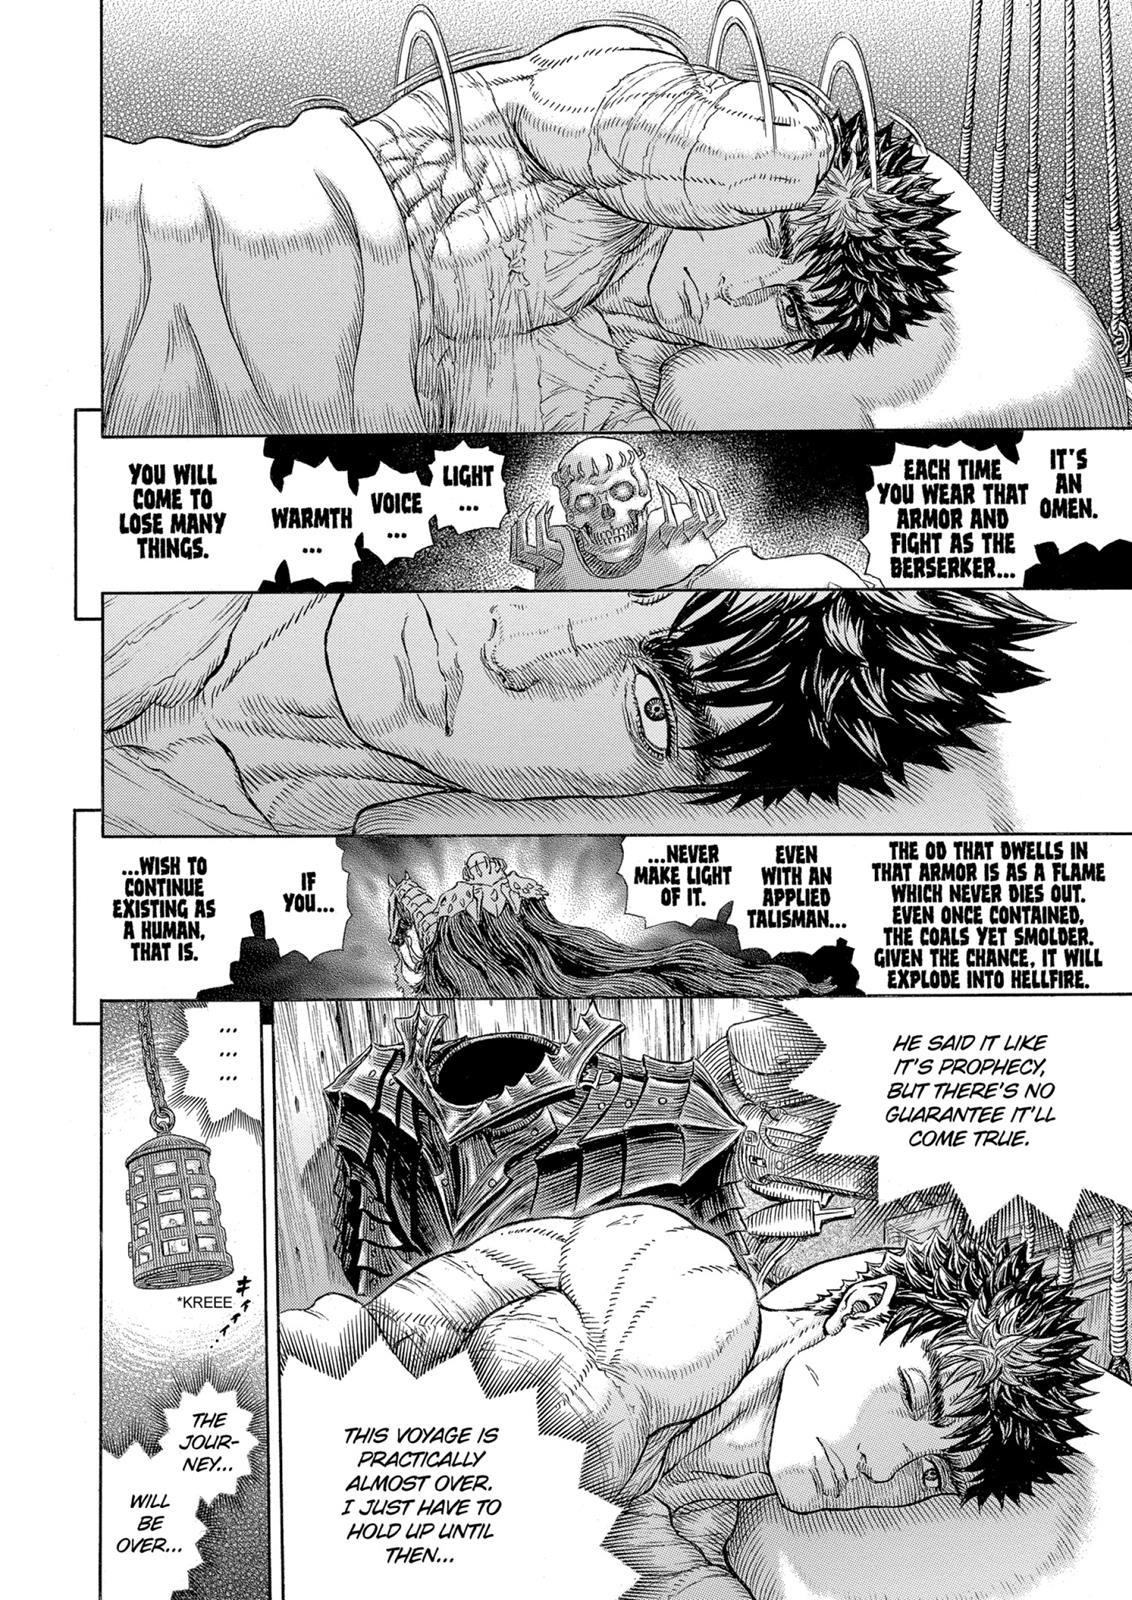 Berserk Manga Chapter 328 image 16